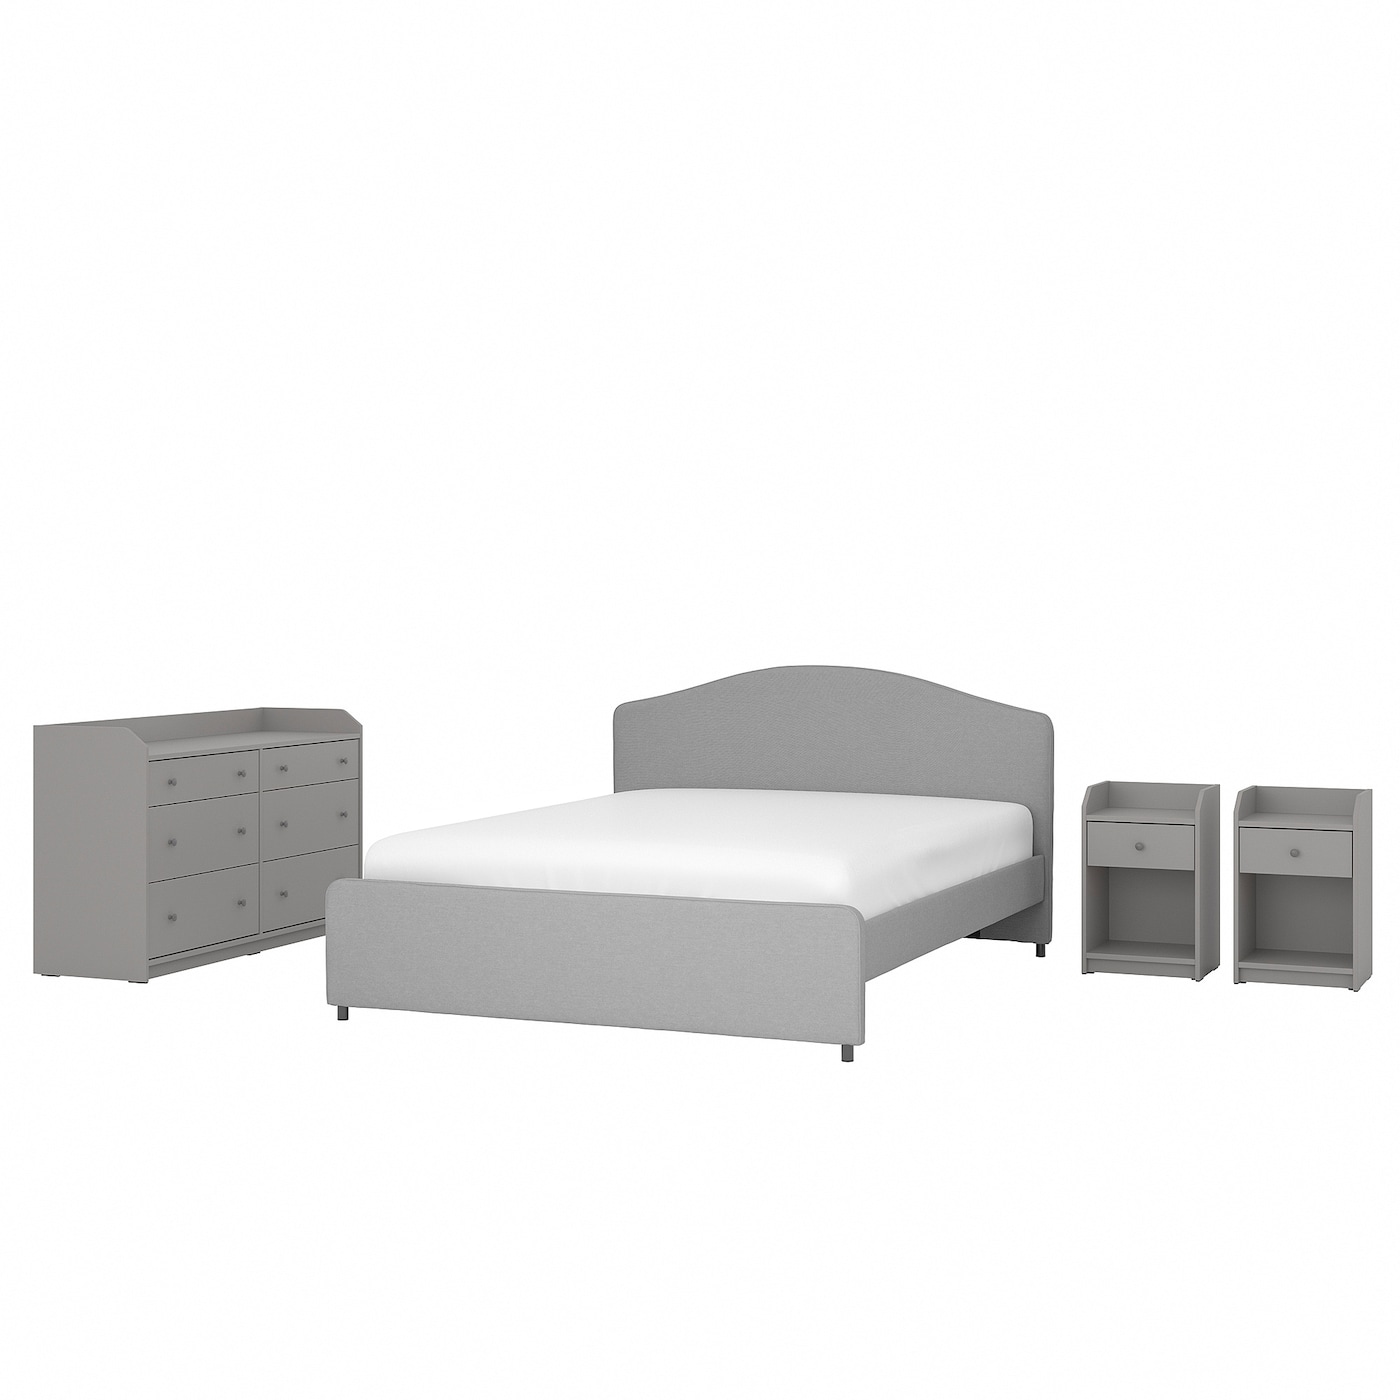 Комбинация мебели для спальни - IKEA HAUGA, 200x140см, серый/светло-серый, ХАУГА ИКЕА